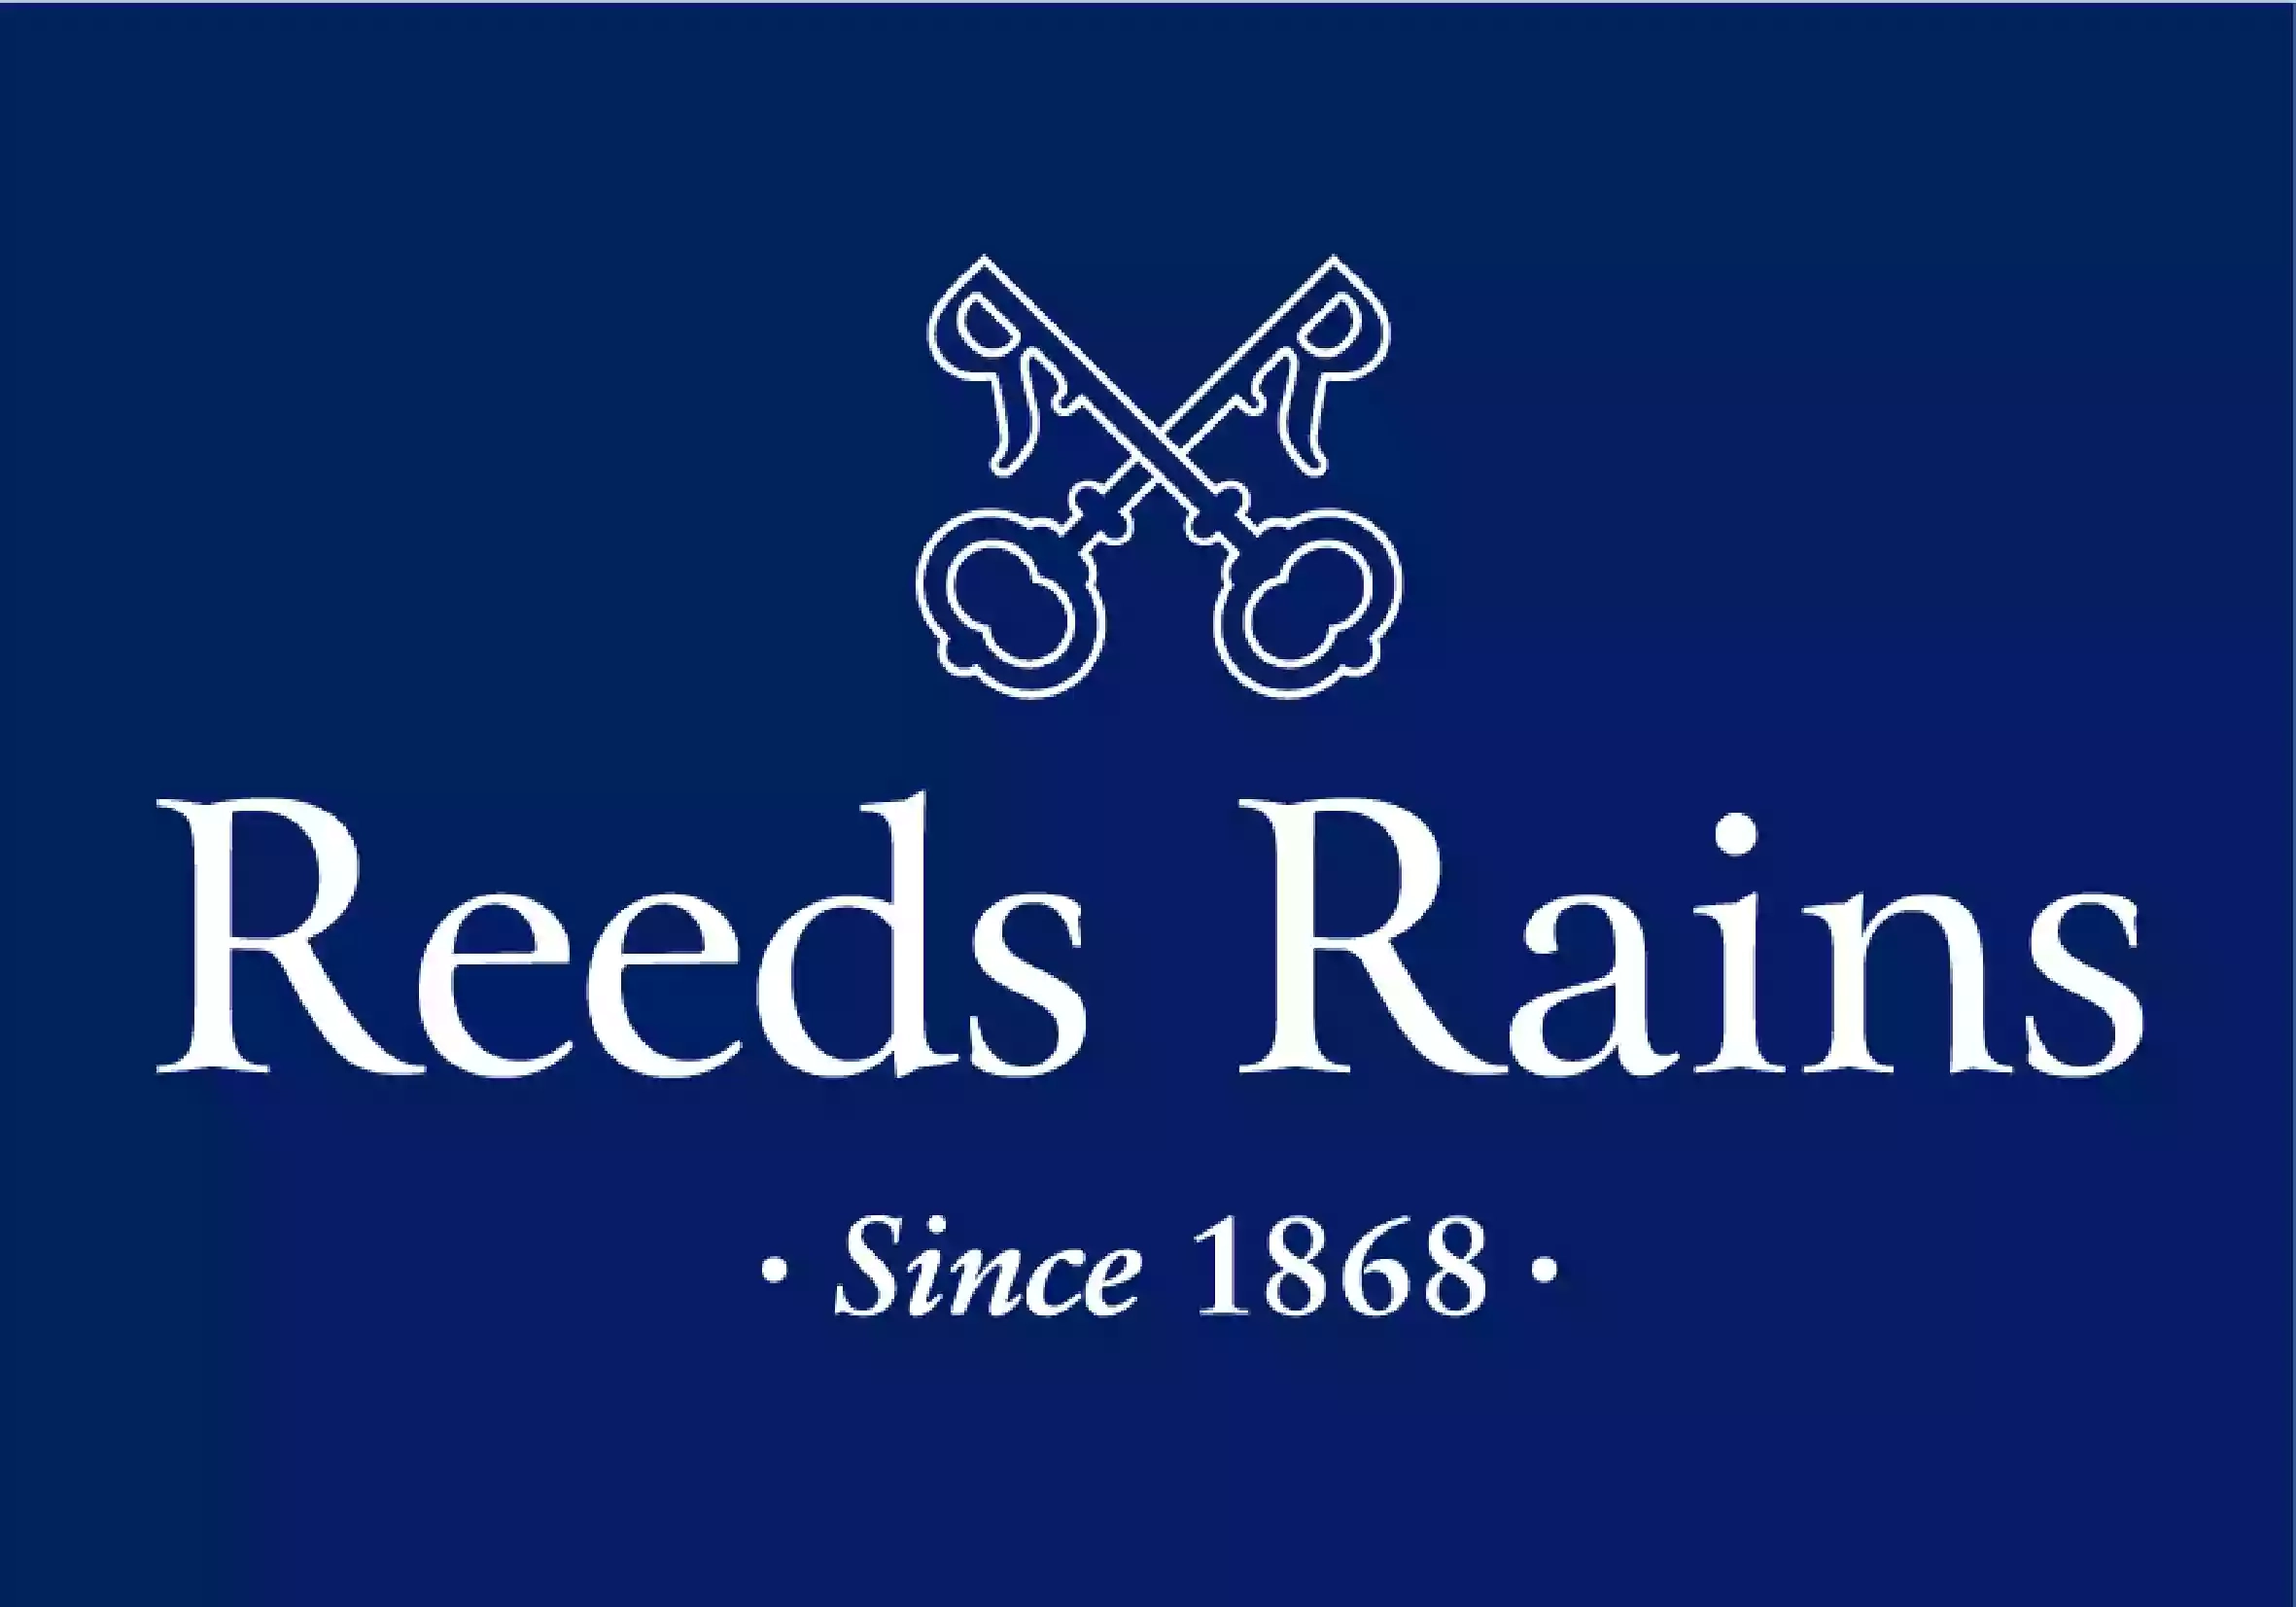 Reeds Rains Estate Agents St Helens